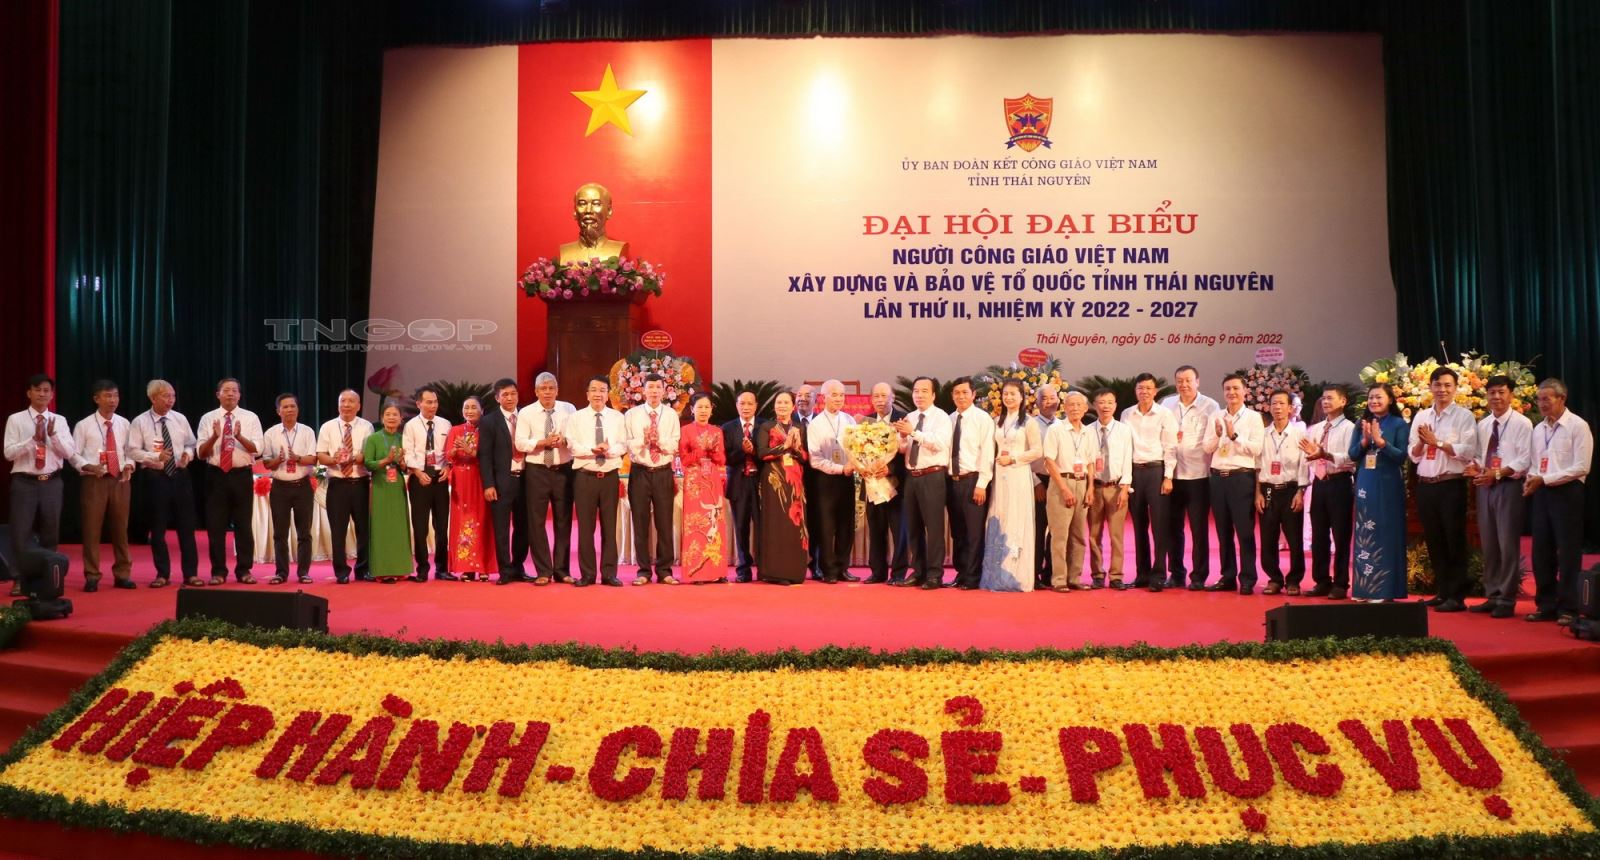 Ủy ban Đoàn kết Công giáo Việt Nam tỉnh Thái Nguyên nhiệm kỳ 2022-2027 ra mắt Đại hội.